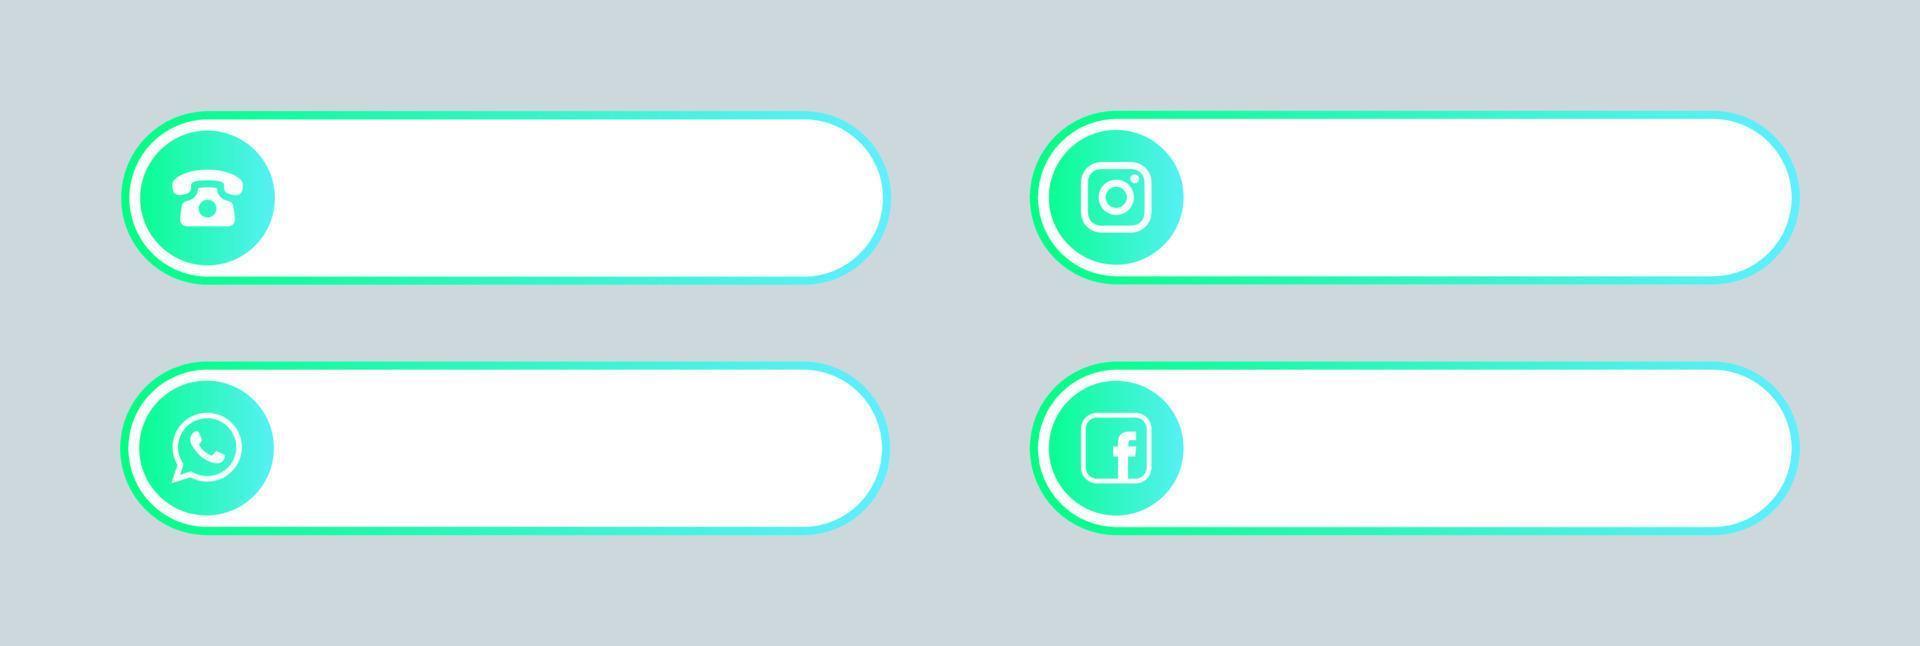 mídias sociais populares e entre em contato com o terceiro conjunto de ícones inferior. vetor